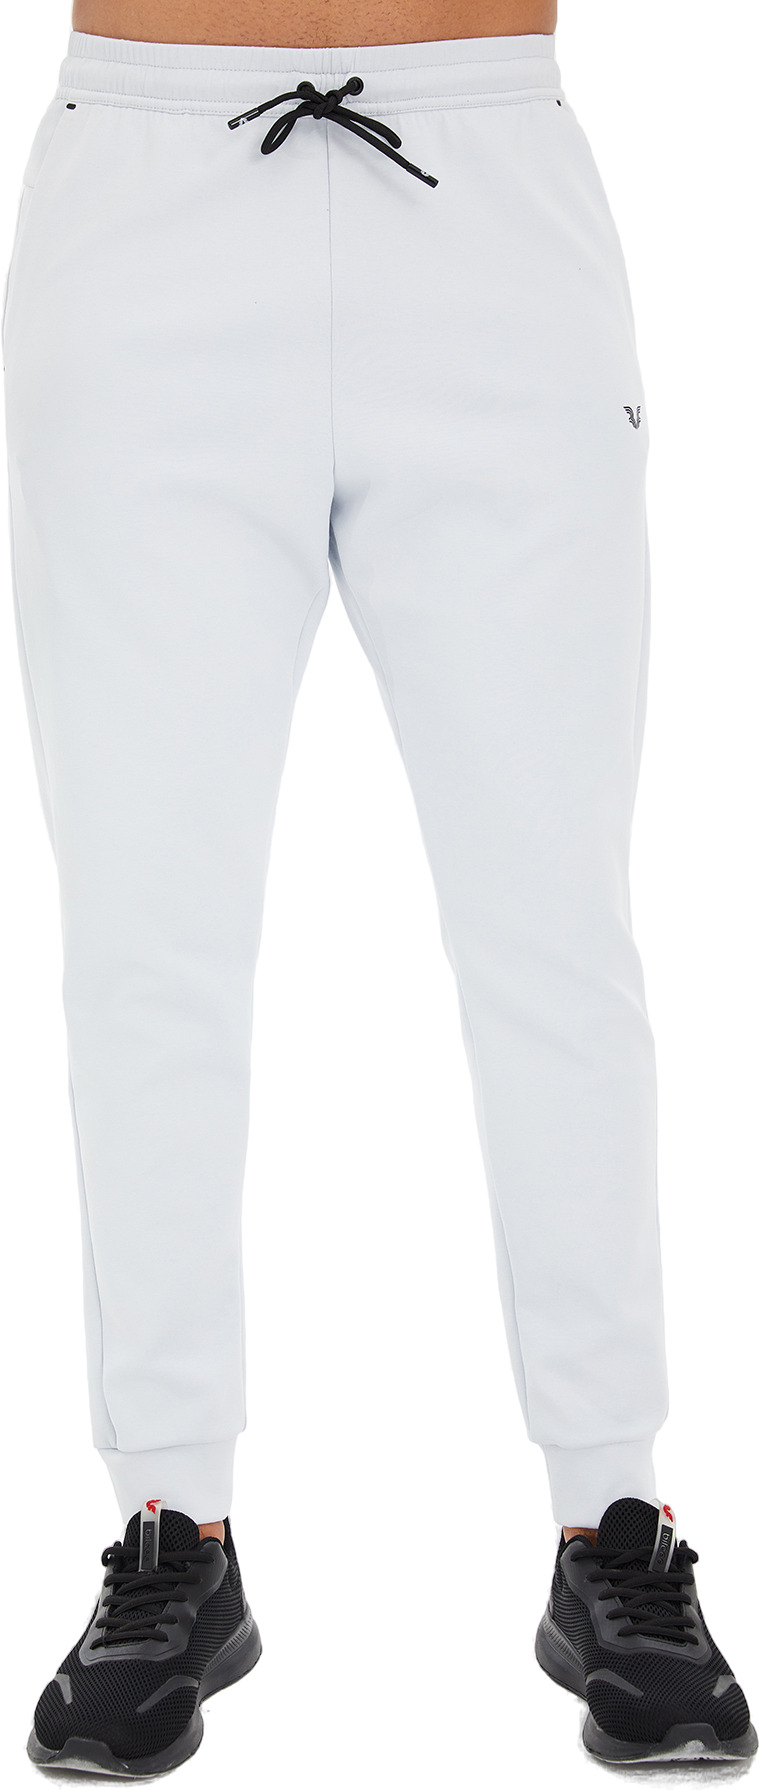 Спортивные брюки мужские Bilcee Men Knitting Pants белые XL